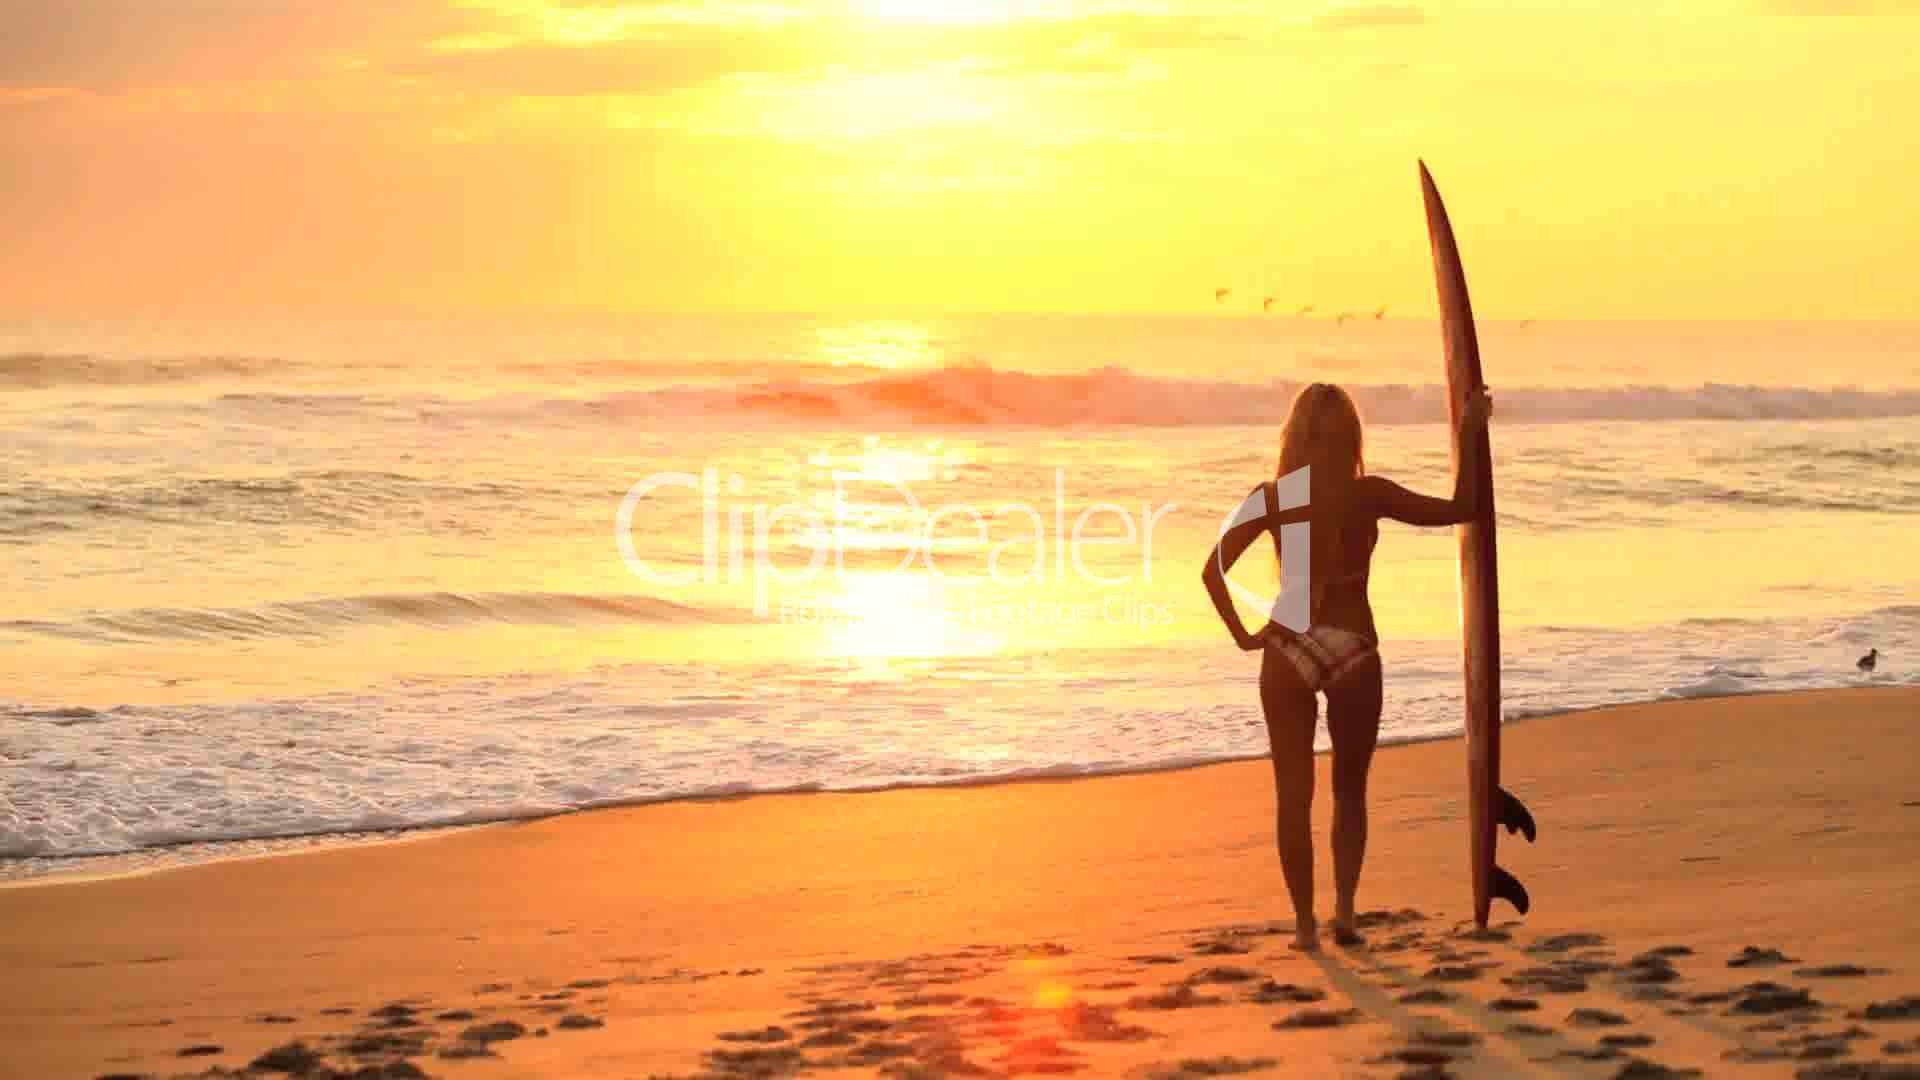 1920x1080 13--934789-Surfer Girl at Sunrise.jpg (1920Ã1080)